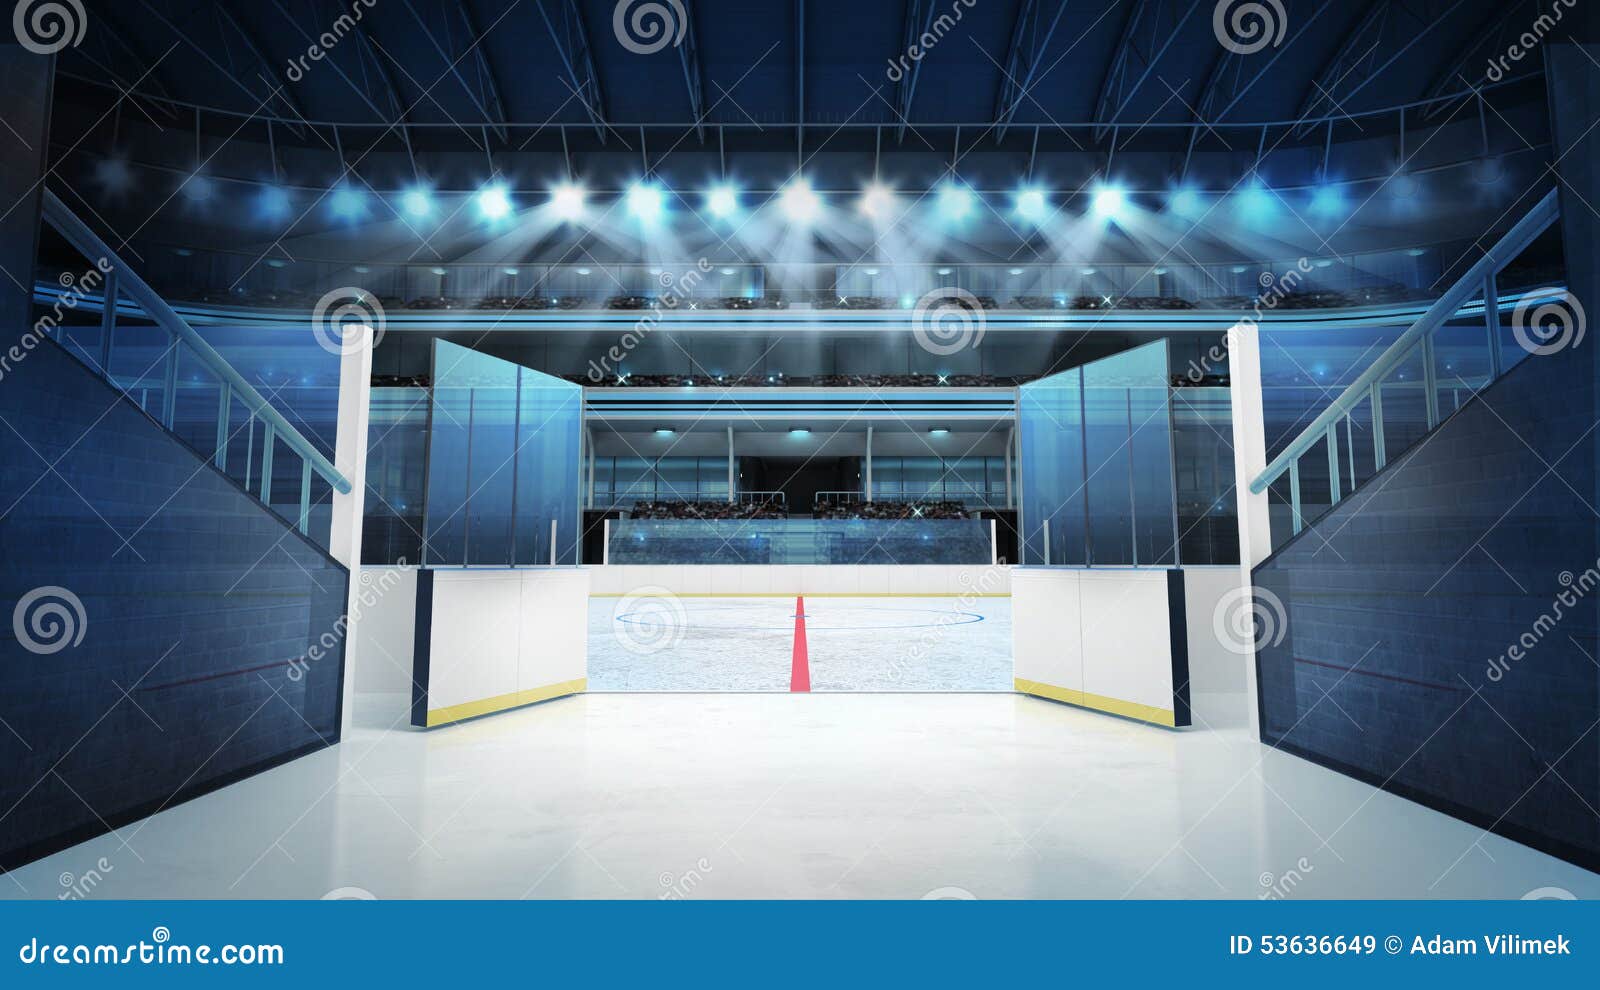 hockey stadium with open doors leading to ice